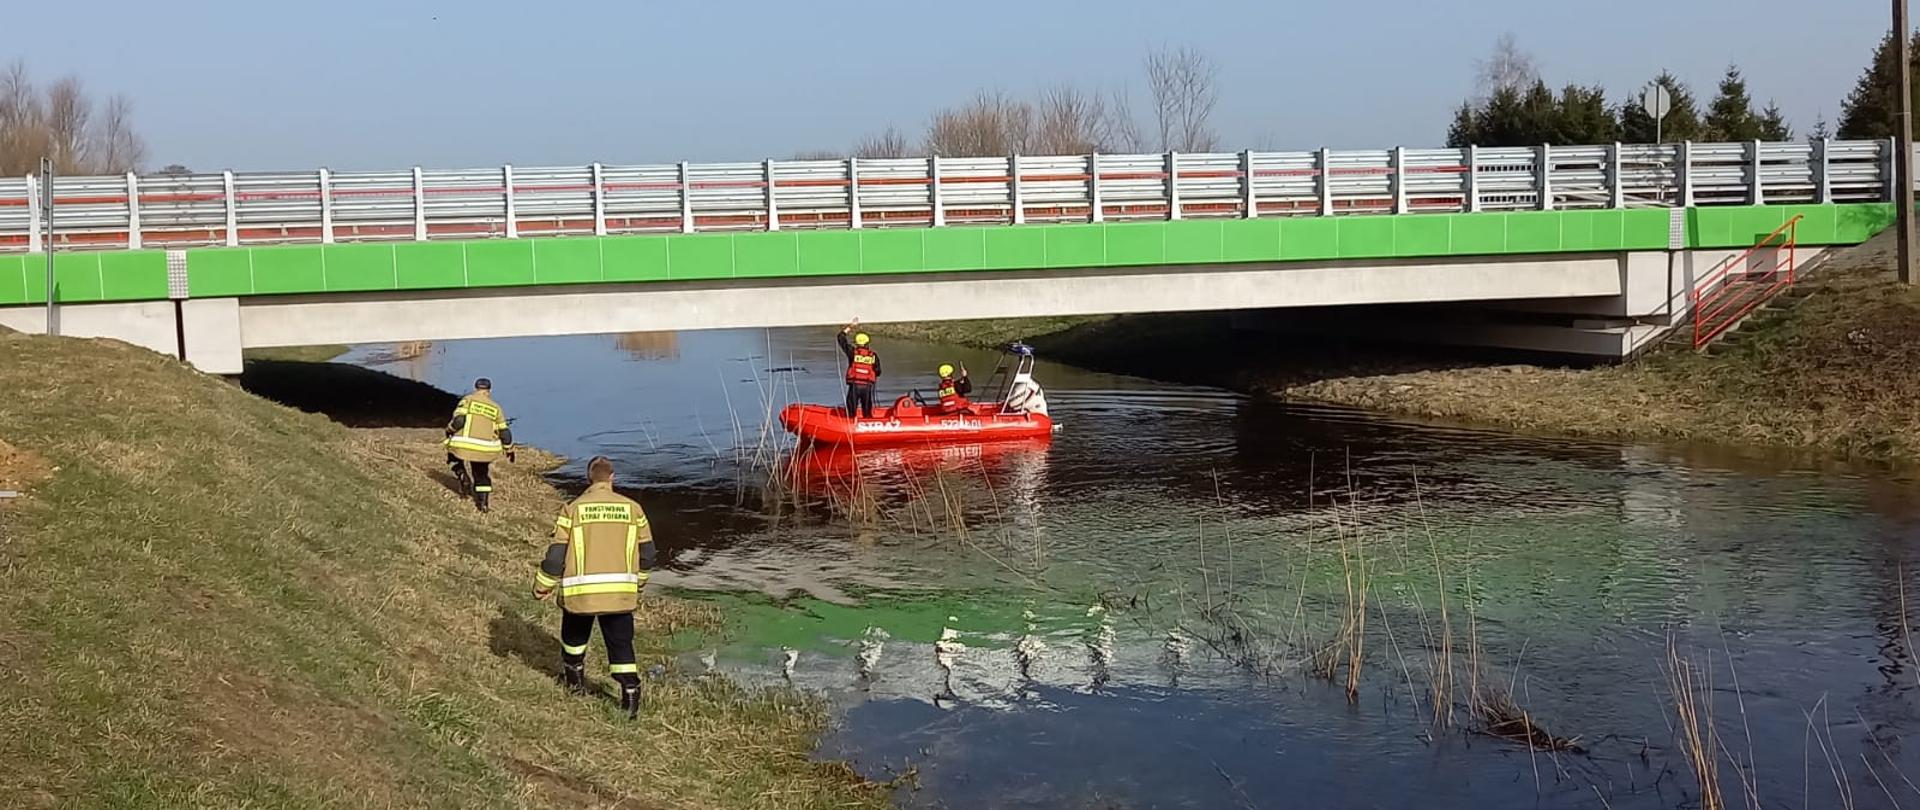 rzeka, nad nią zielono - biały most, pod którym przepływa ponton czerwony na nim strażacy patrolujący poziom rzeki